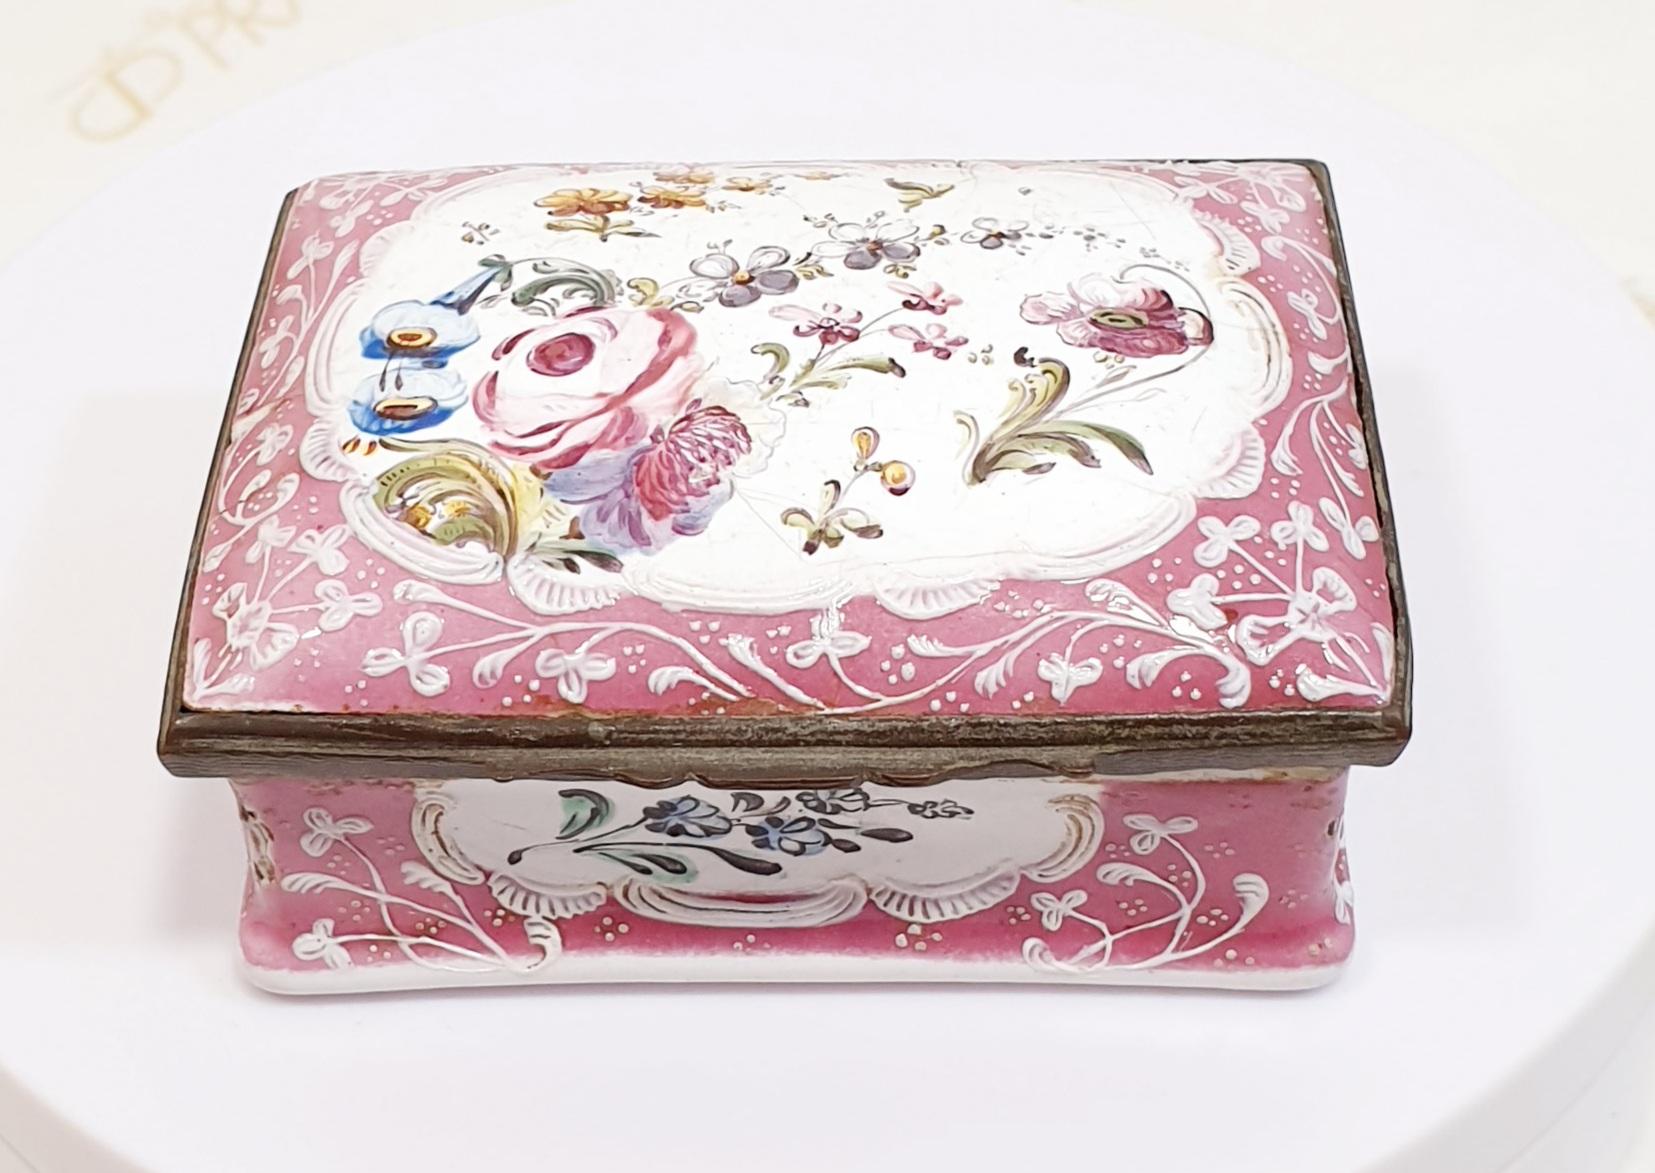 Antique 19e Bijoux Antique 19e Bijoux Boîte en porcelaine rose peinte à la main avec fleurs aprox 1880 
Un cadeau parfait pour la décoration ou la conservation d'objets personnels et de valeur
Fait partie d'une collection de six 

PRADERA est la